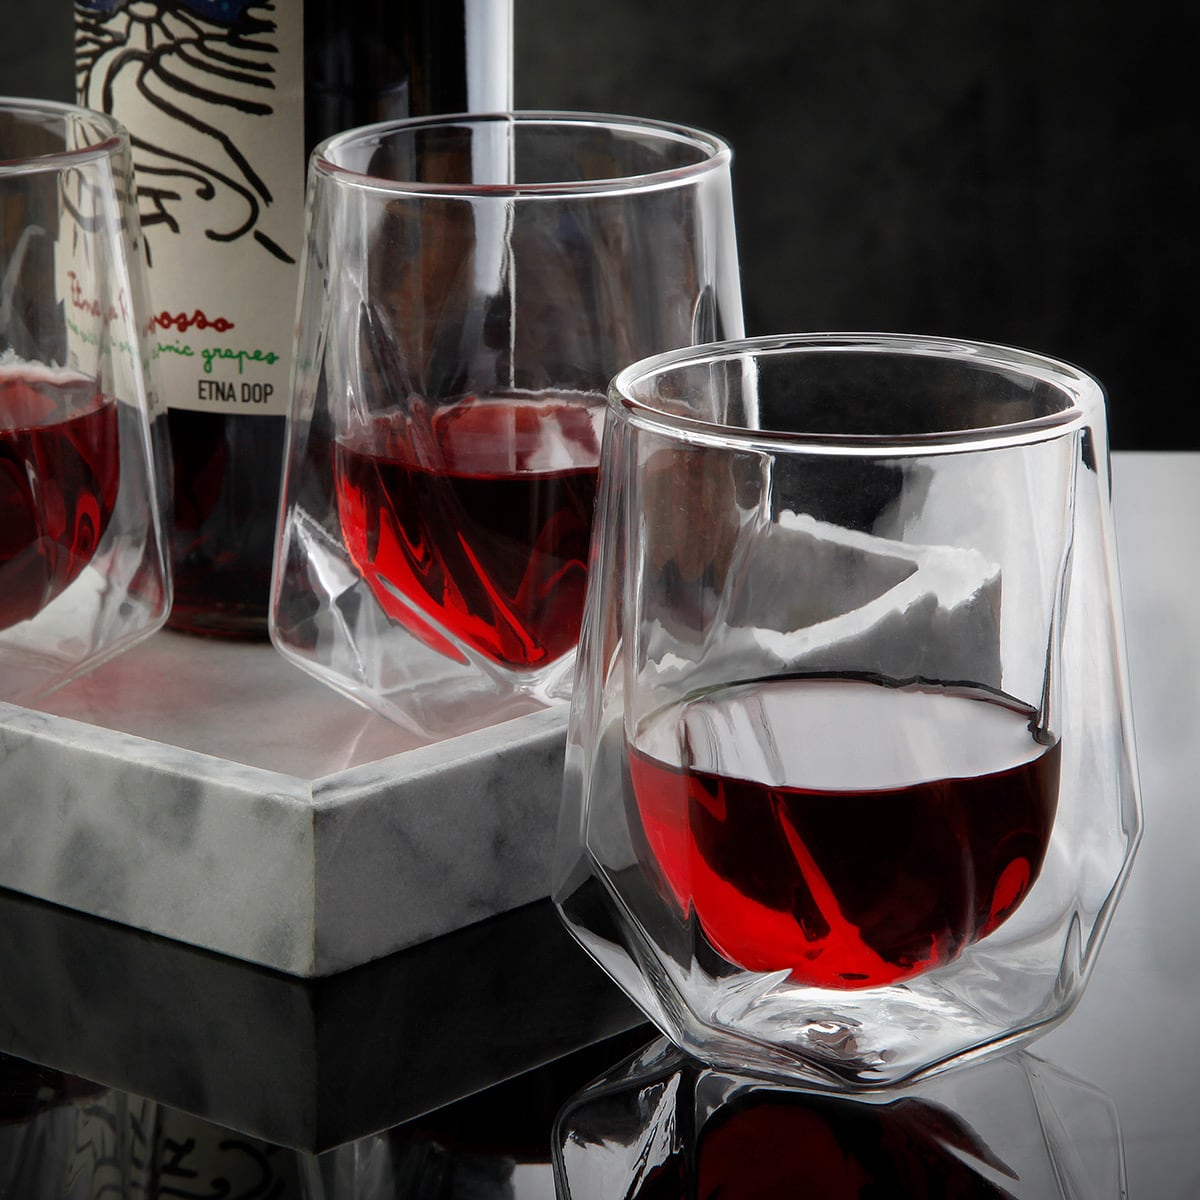 Rivendell Aerating Wine Glasses, Set of 2